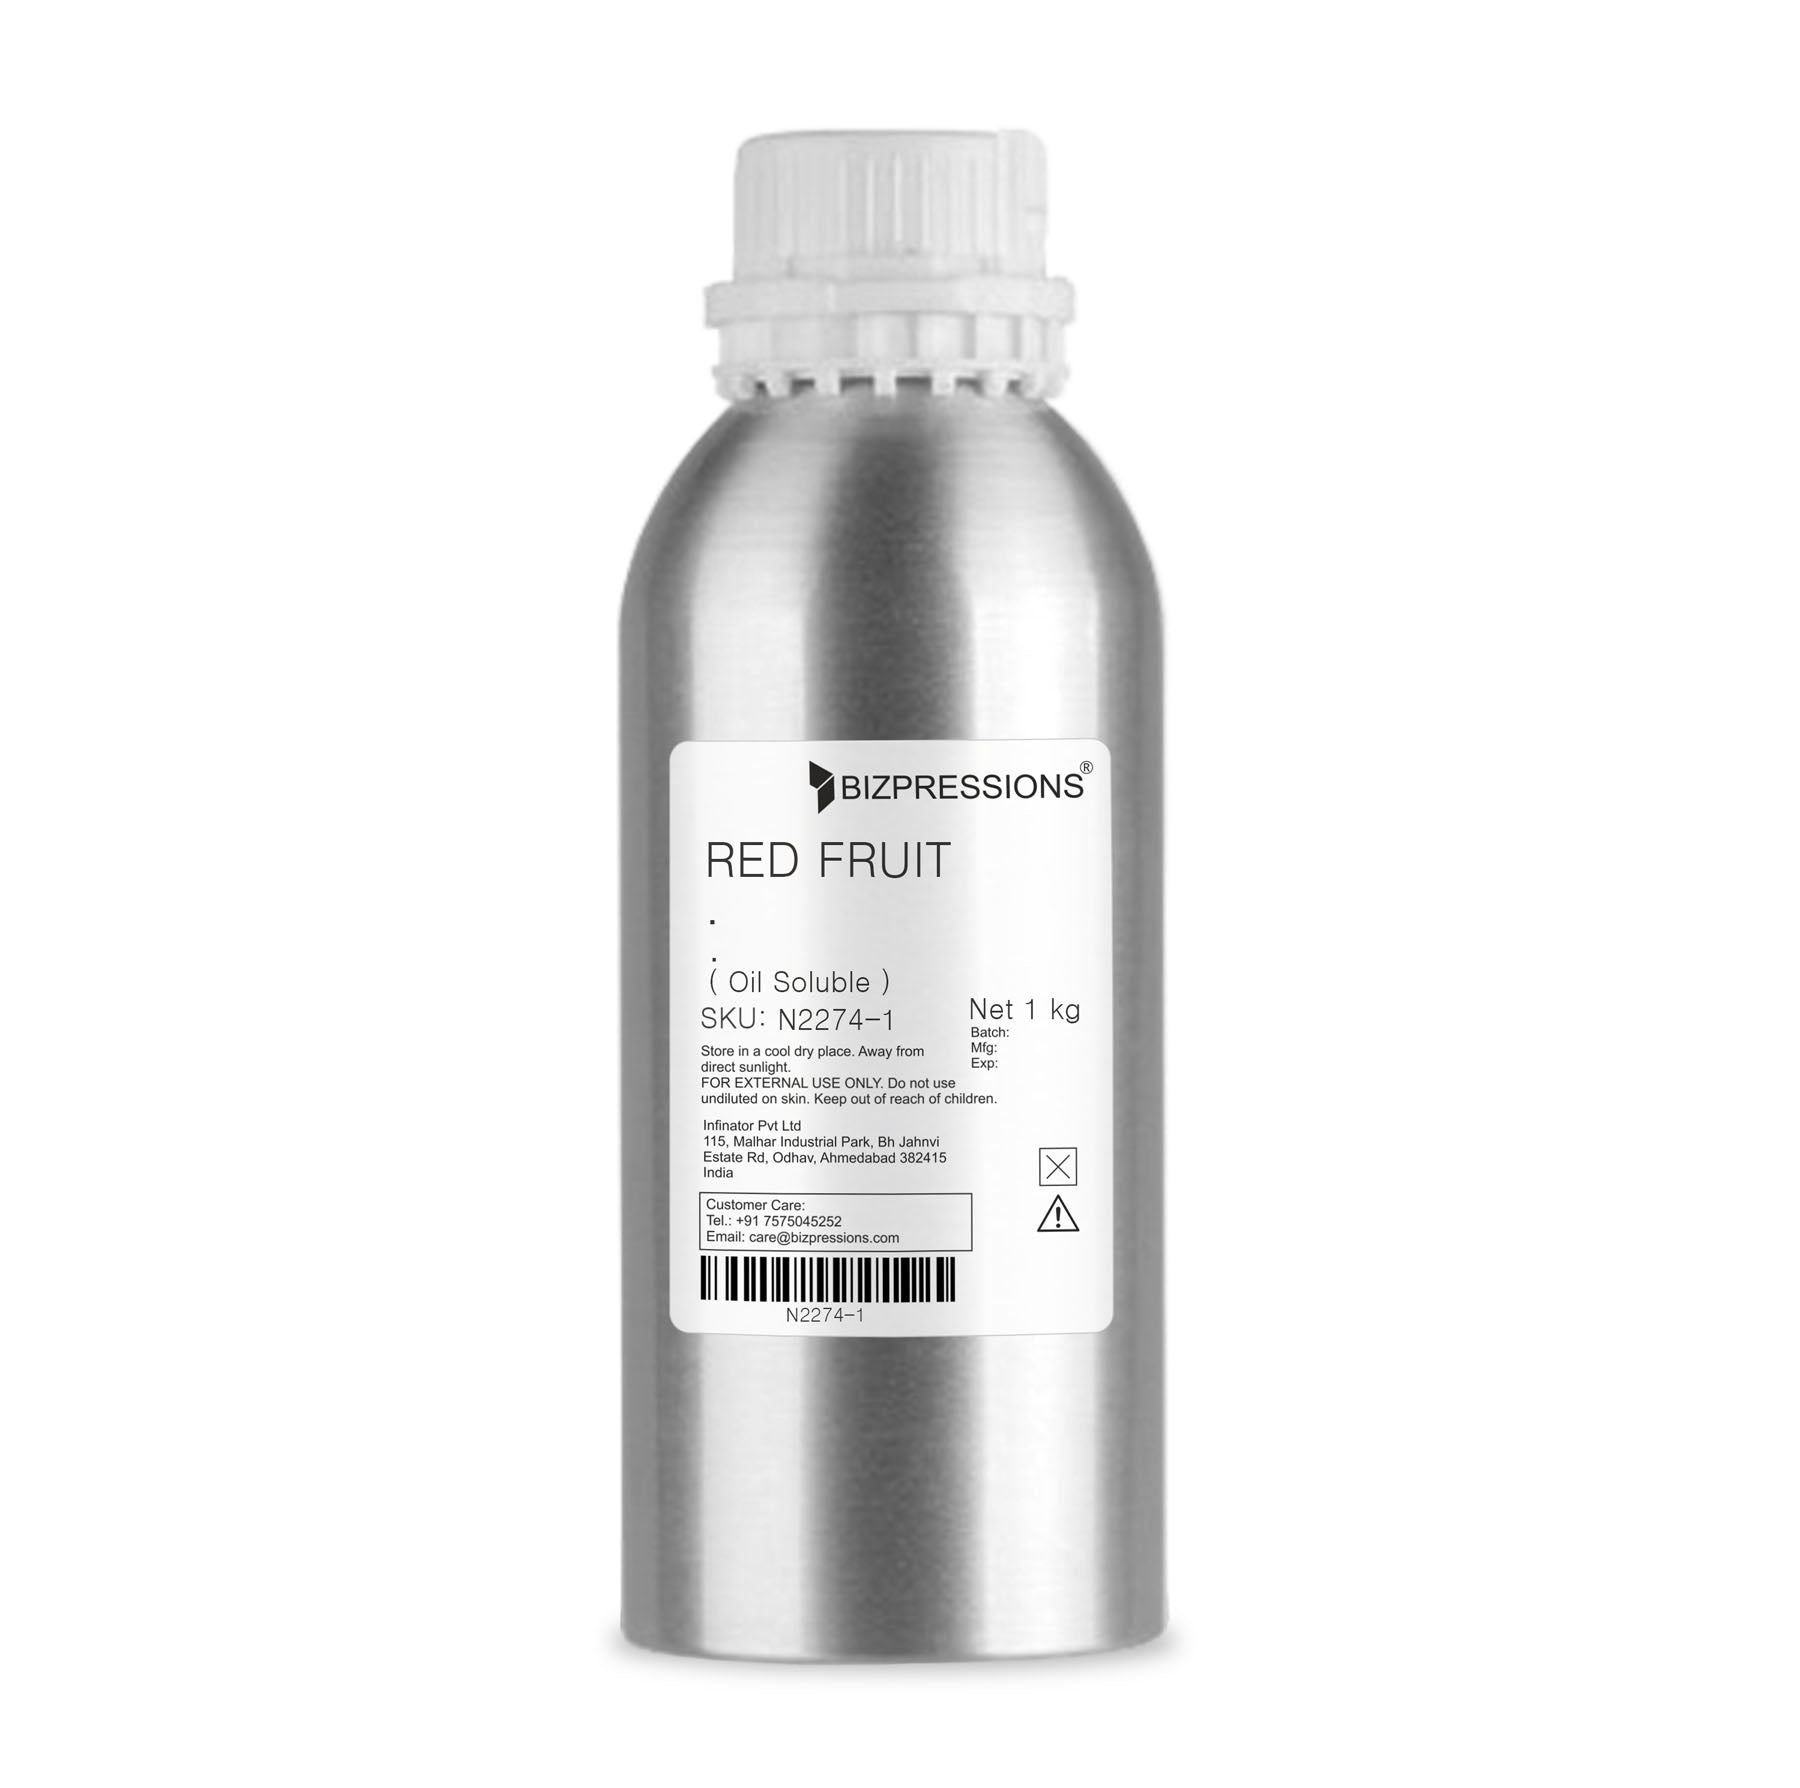 RED FRUIT - Fragrance ( Oil Soluble ) - 1 kg